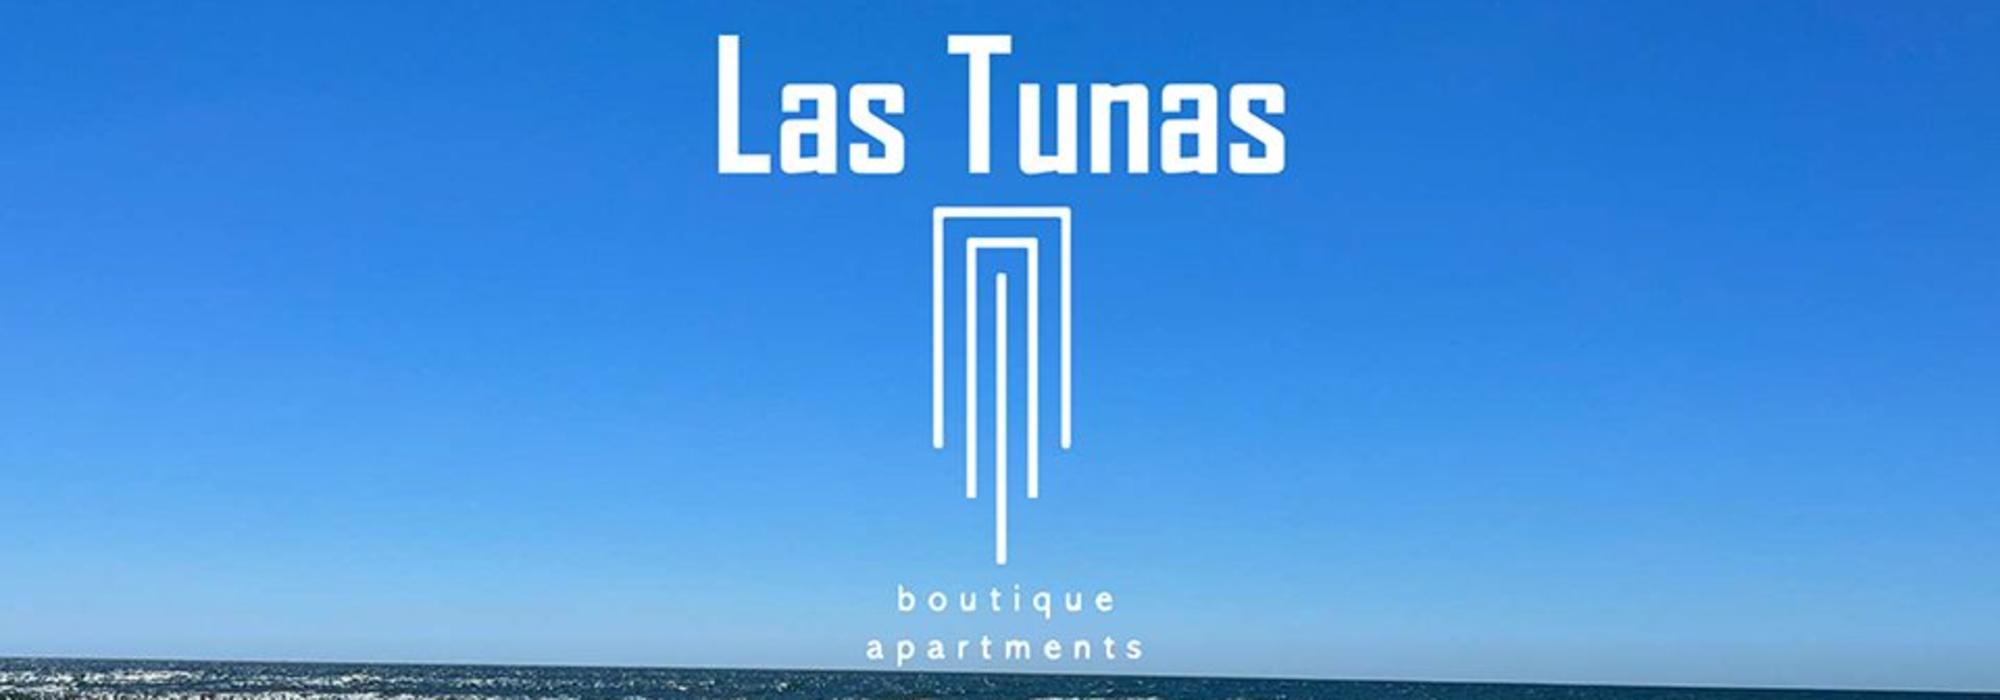 Las Tunas Boutique Apartments